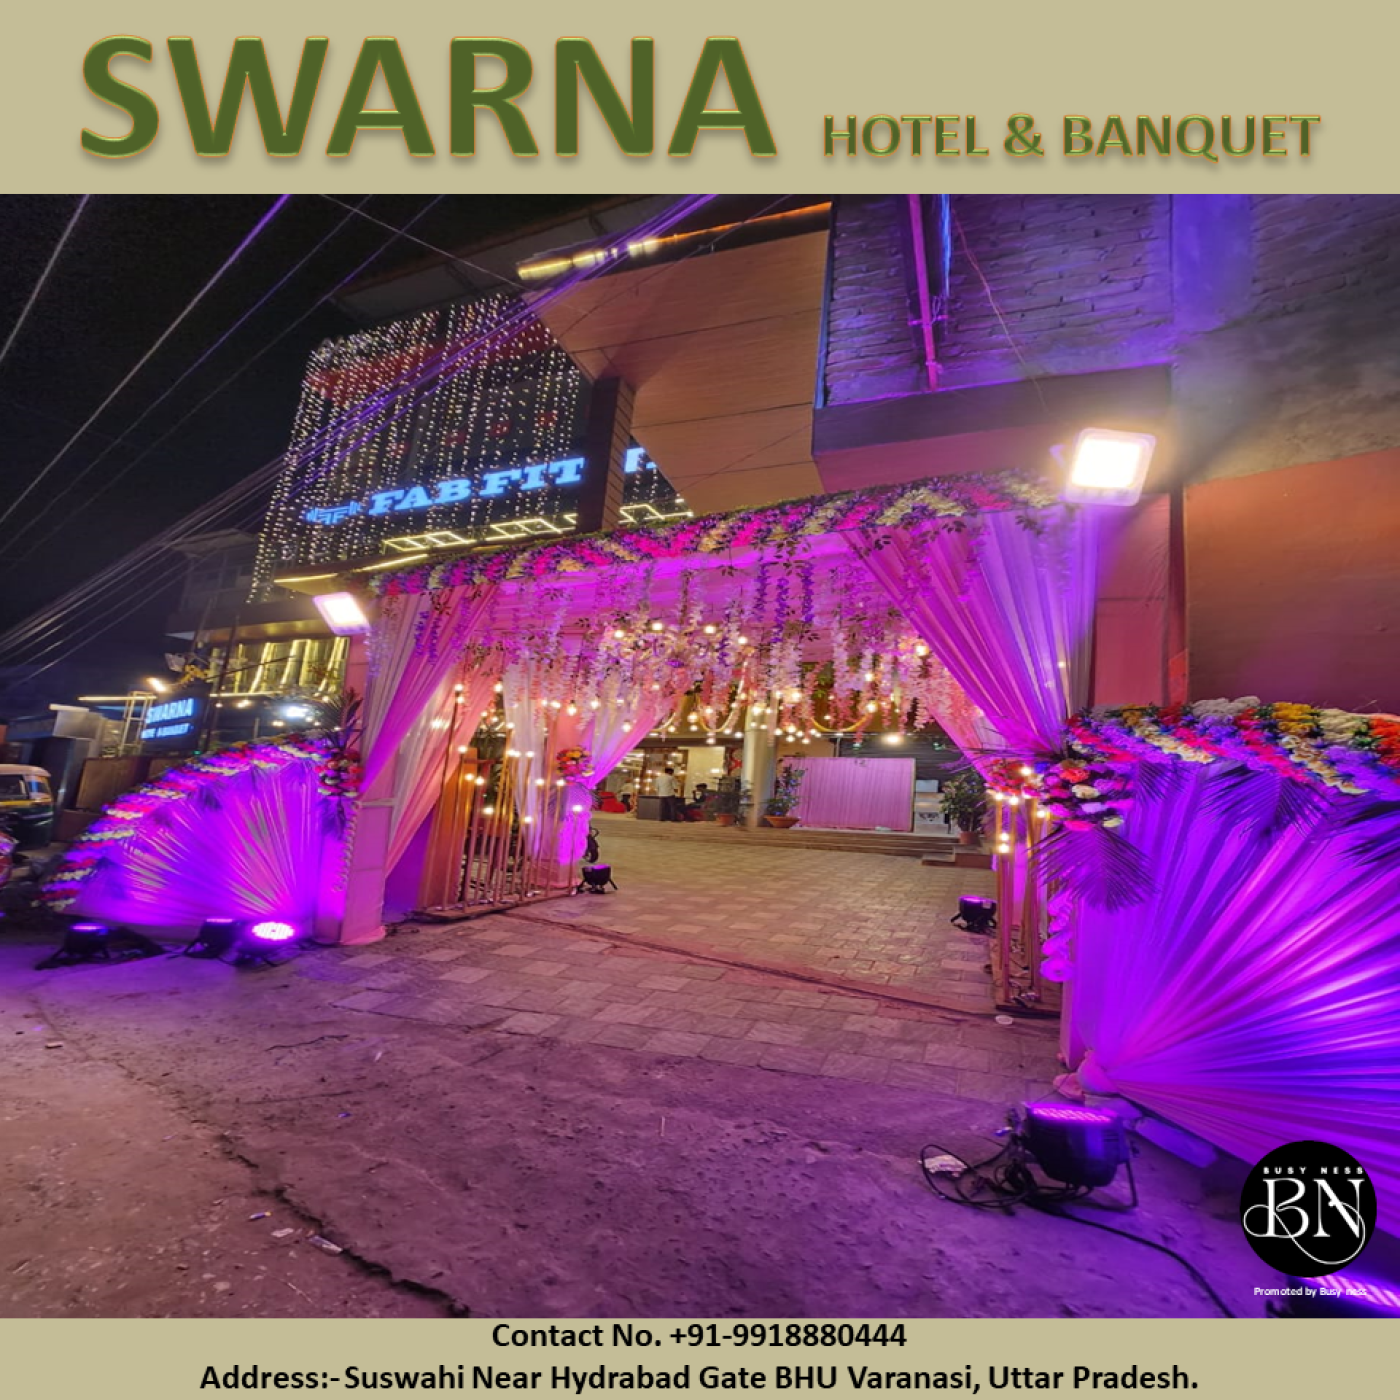 Swarna Banquet Suswahi, Varanasi